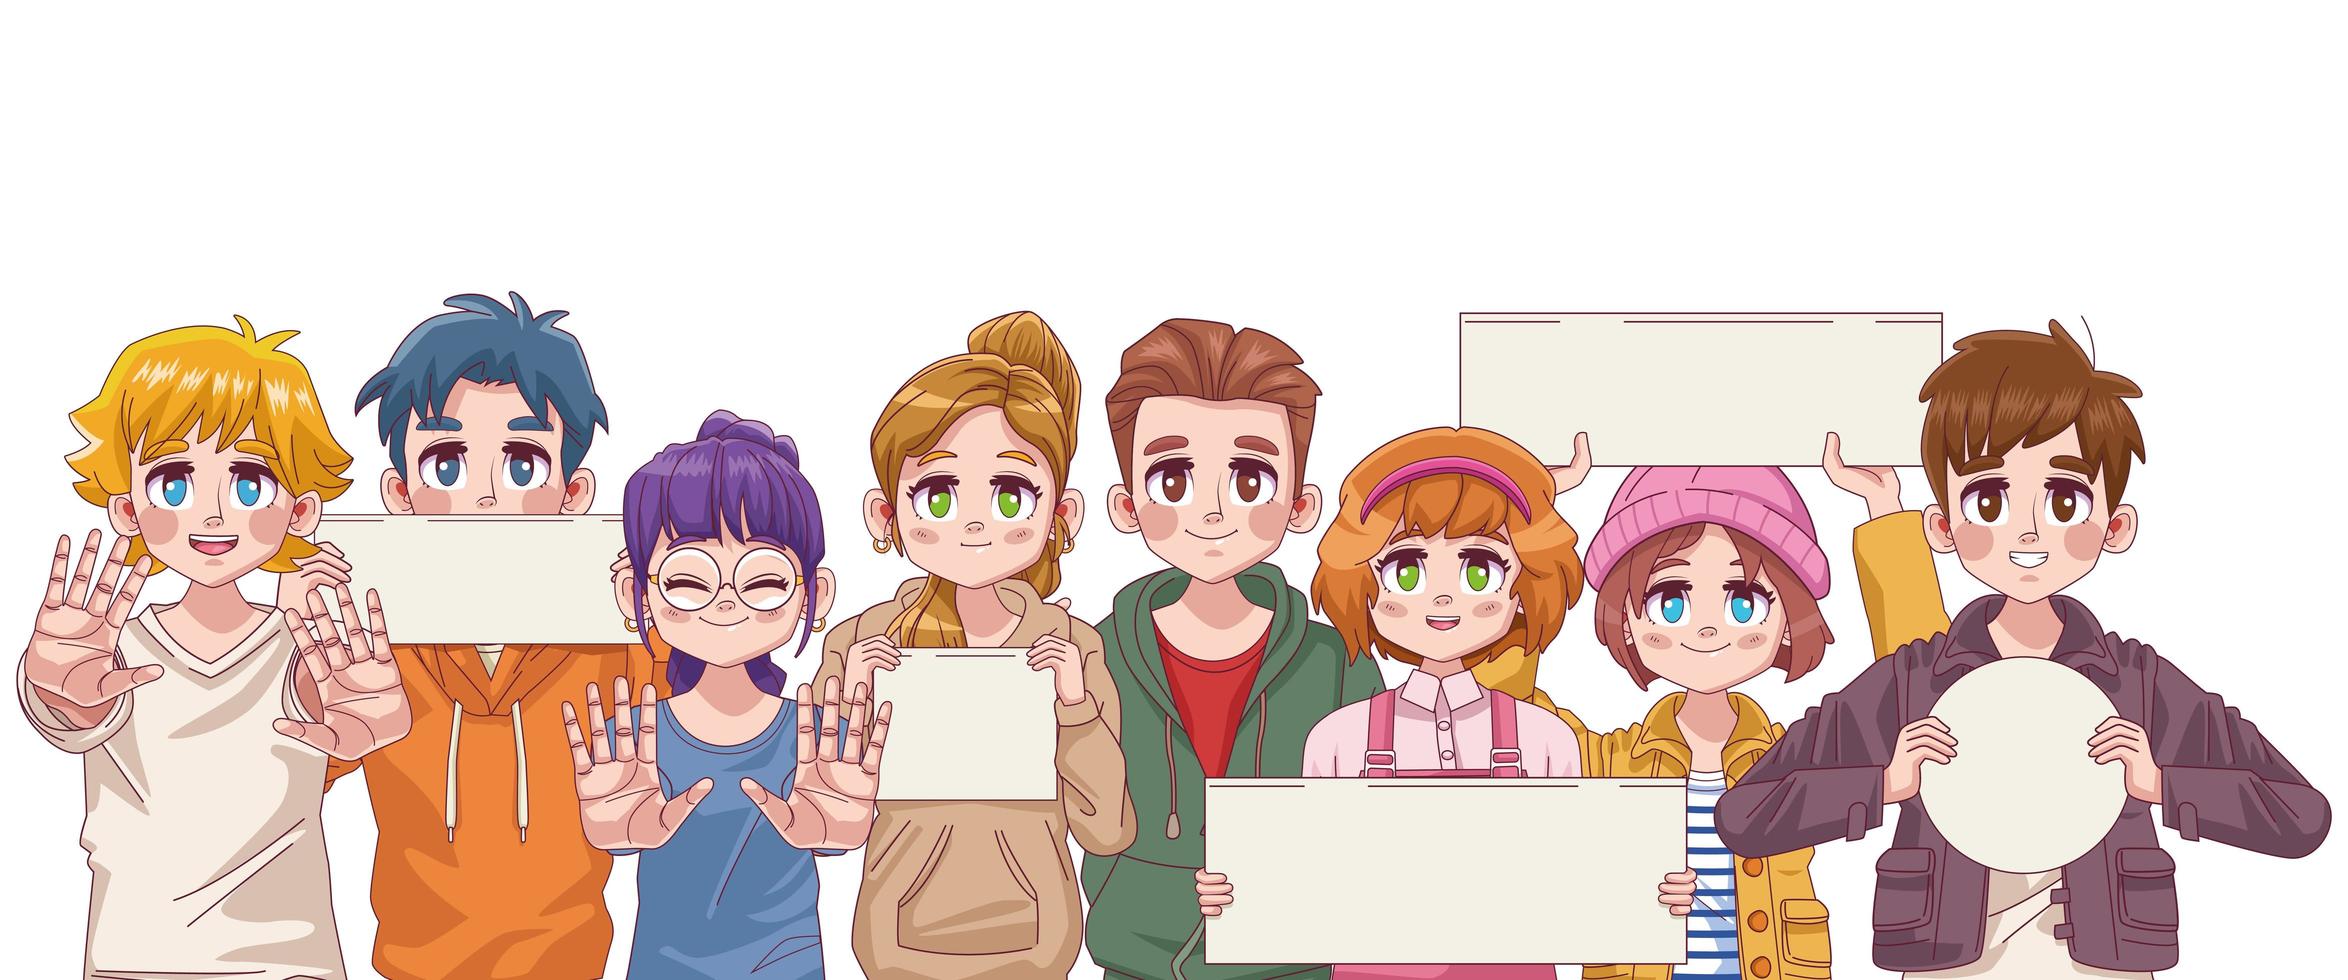 groep van acht schattige manga-anime-personages van youngs-tieners met protestbanners vector